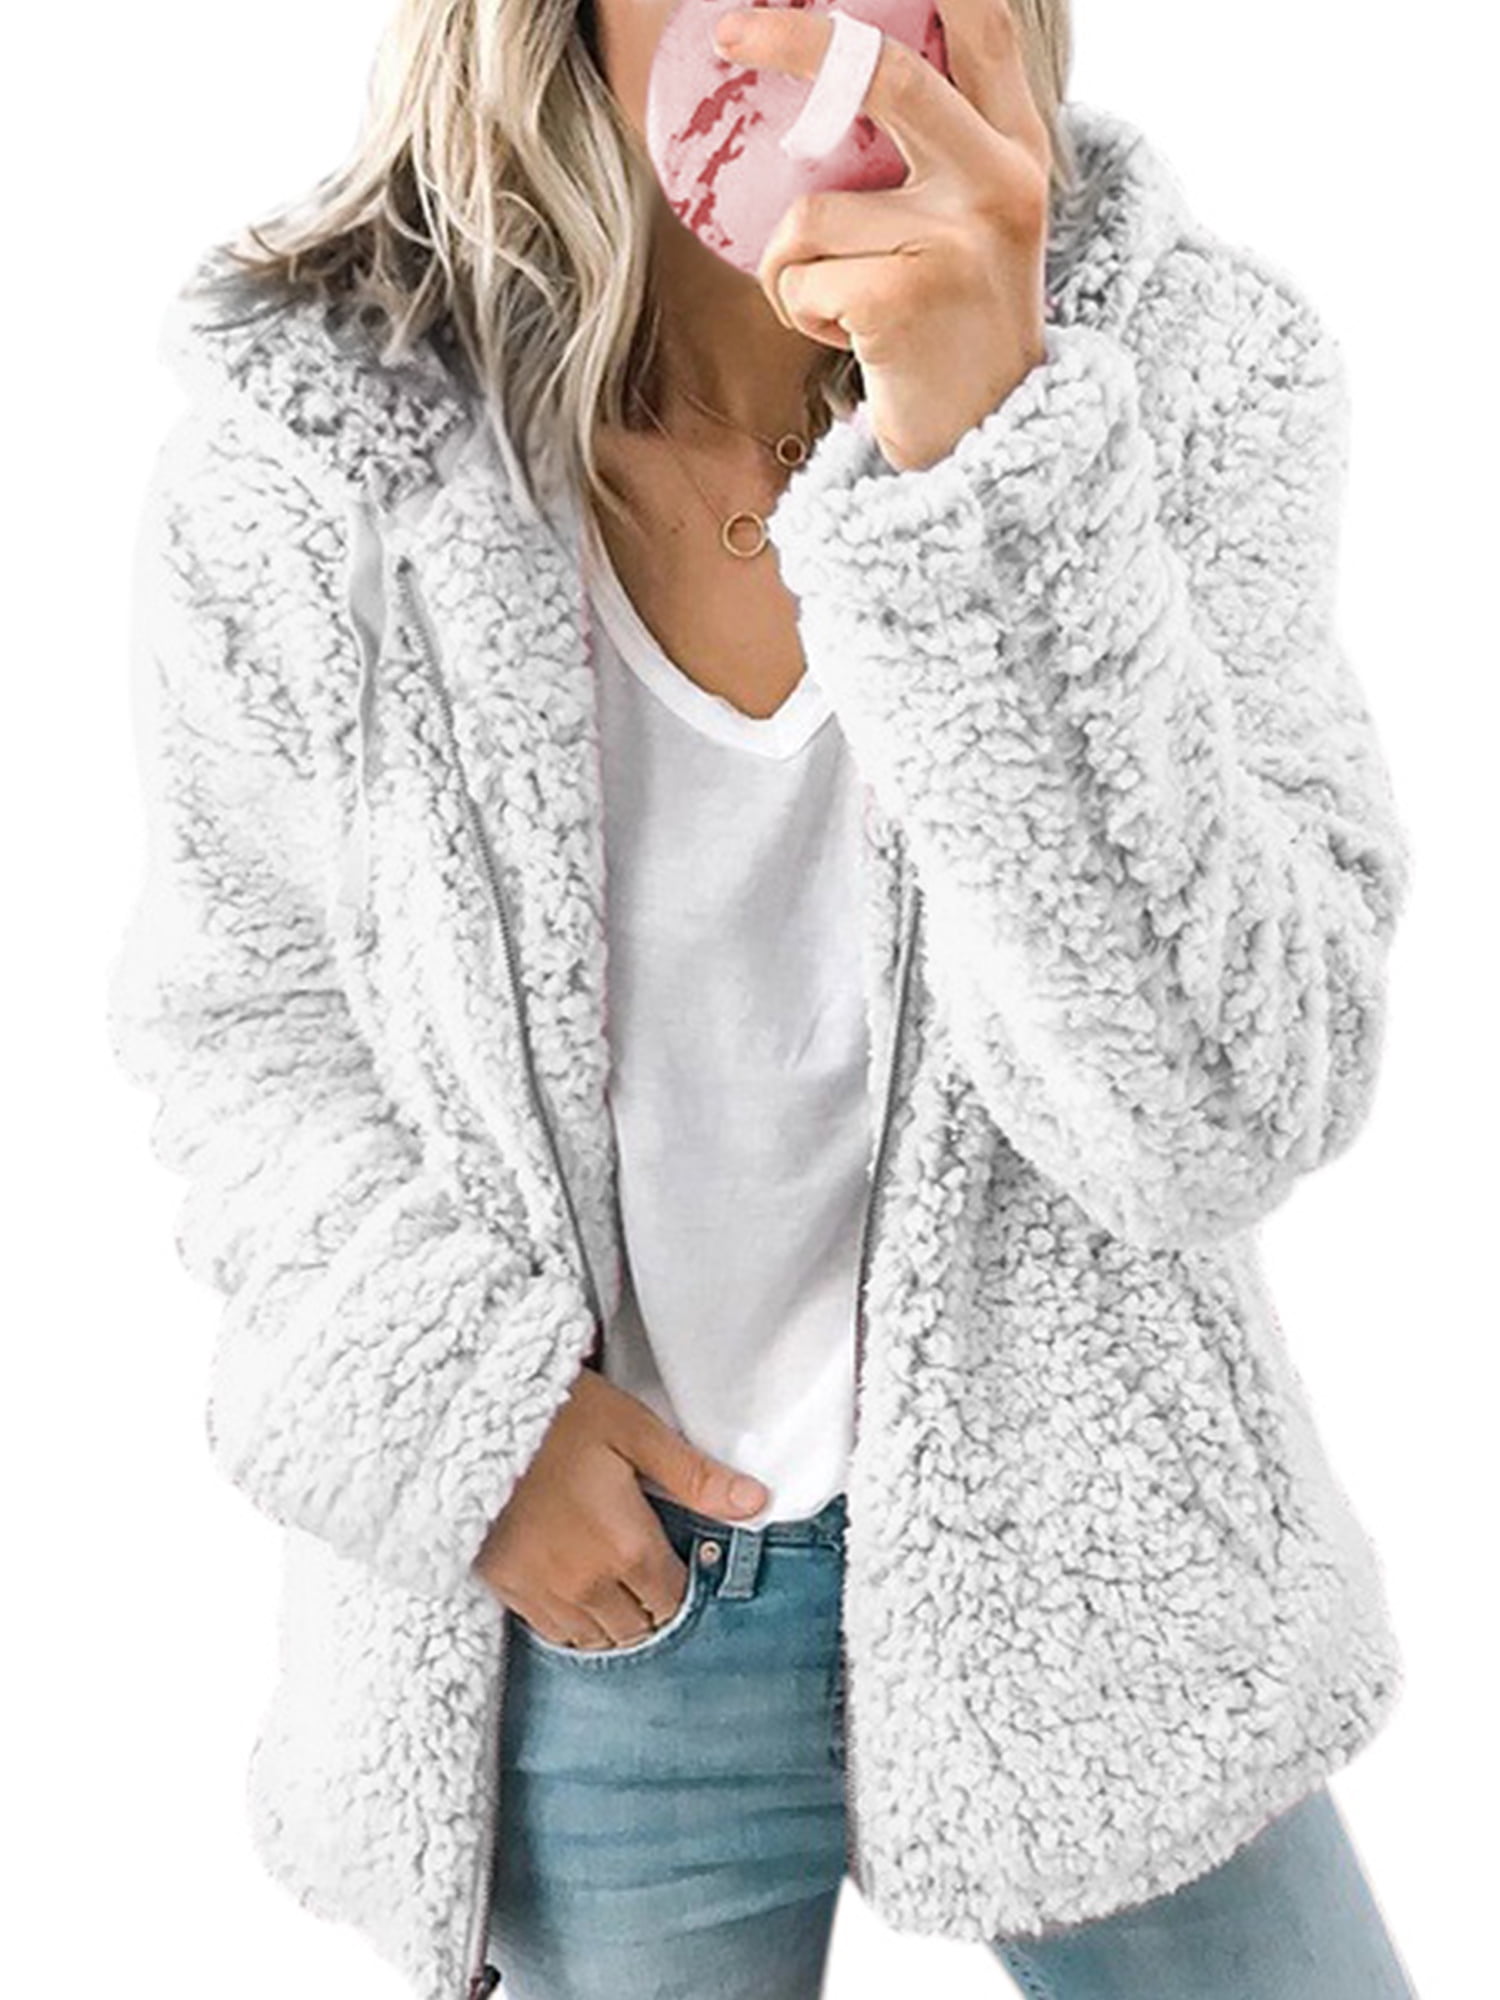 Womens Fleece Fluffy Warm Winter Coat Casual Loose Long Sleeve Jackets Outerwear